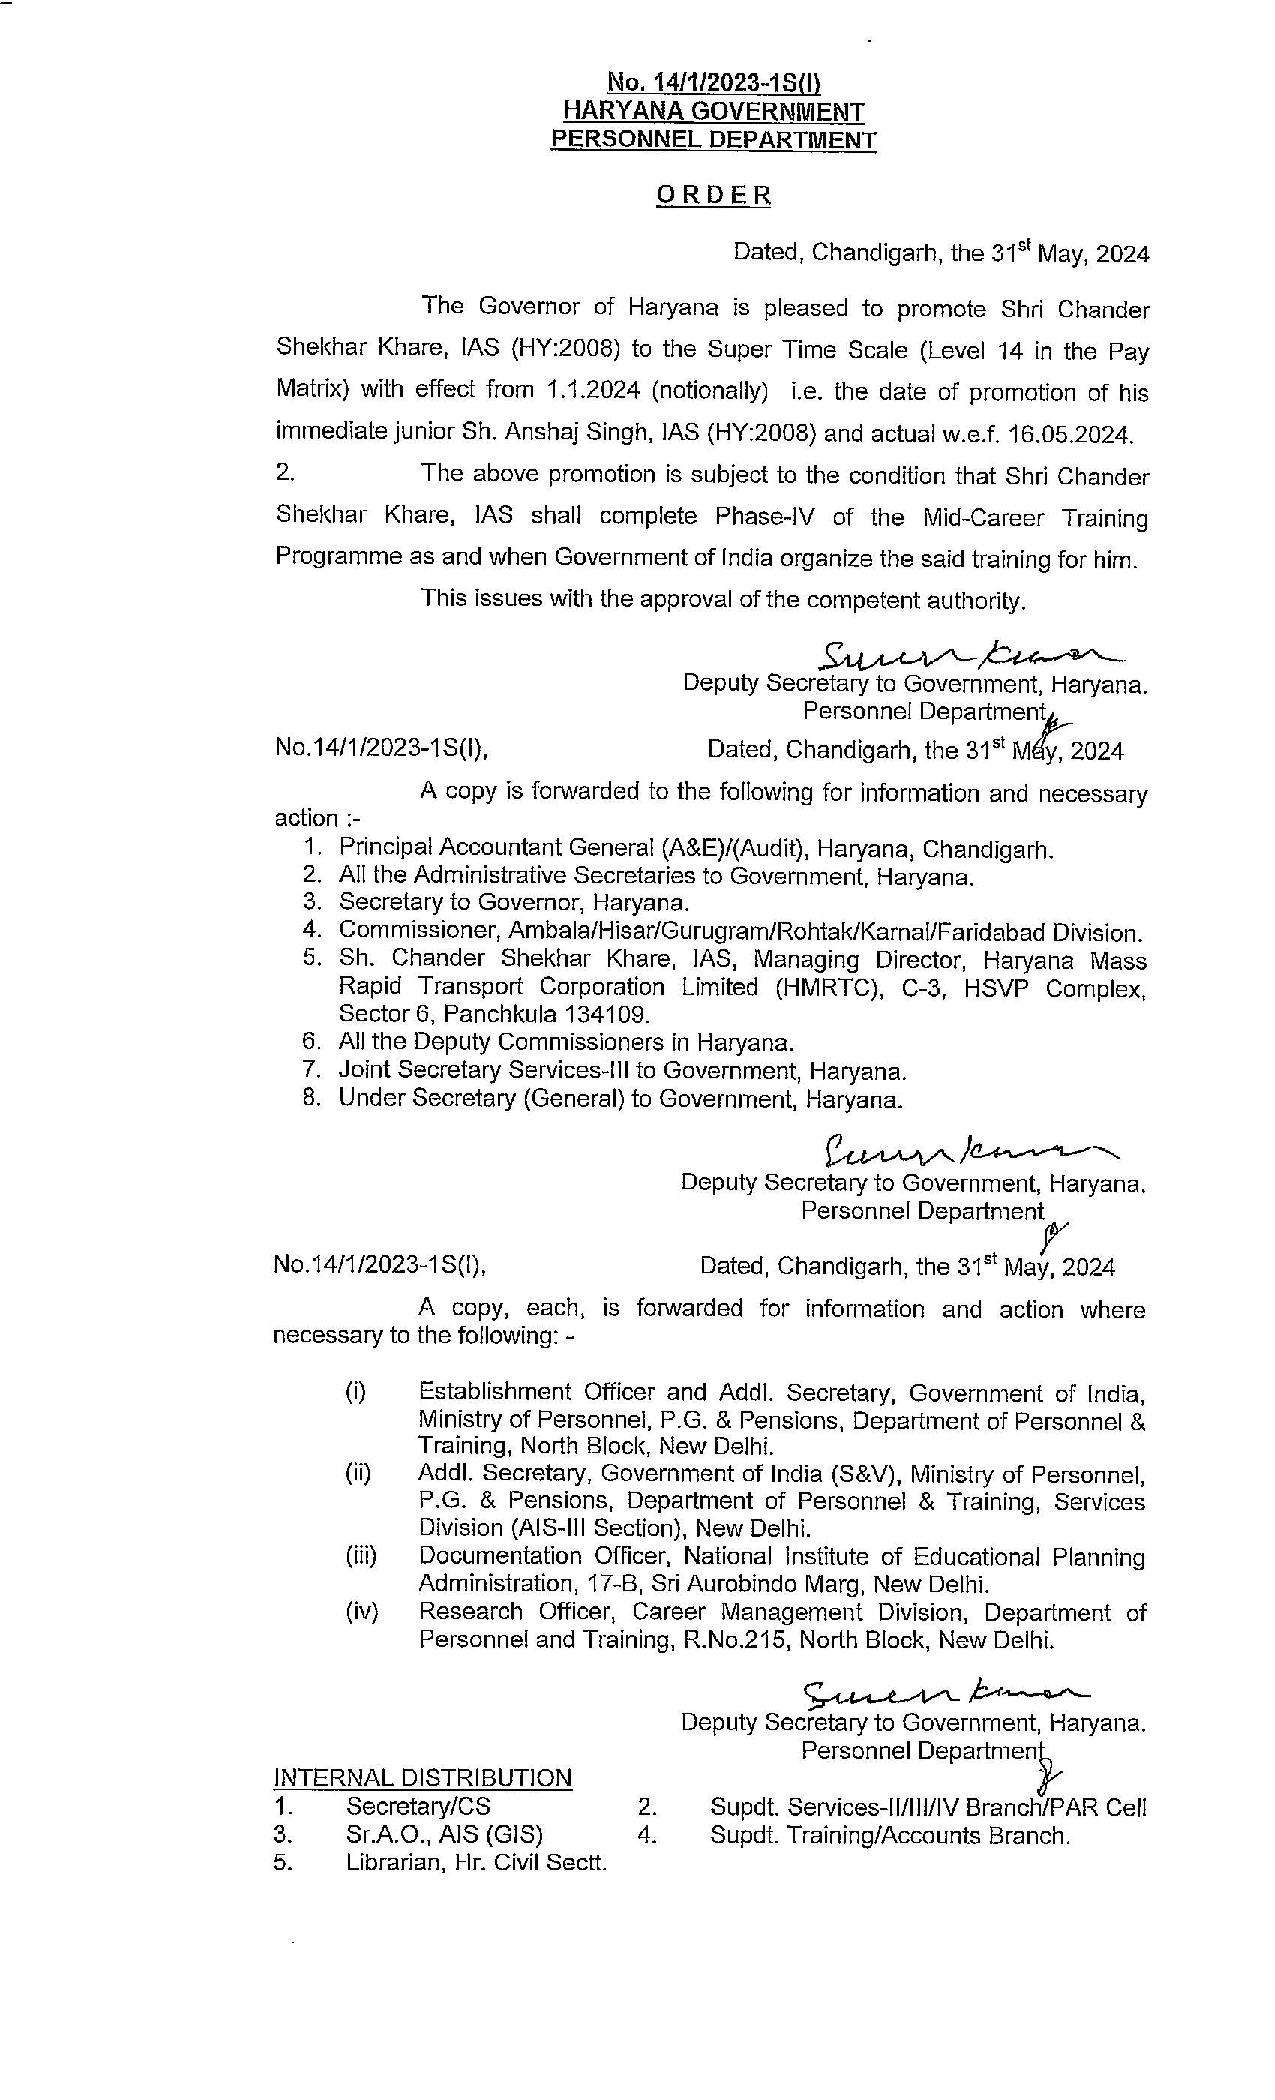 चंडीगढ़ 31 मई: हरियाणा सरकार ने श्री चन्द्रशेखर खरे, आईएएस को 1 जनवरी, 2024 से सुपर टाइम स्केल पर पदोन्नत किया है, जो उनके तत्काल कनिष्ठ श्री अंशज सिंह, आईएएस की पदोन्नति की तिथि है और वास्तविक रूप से 16 मई, 2024 से प्रभावी होगी। 